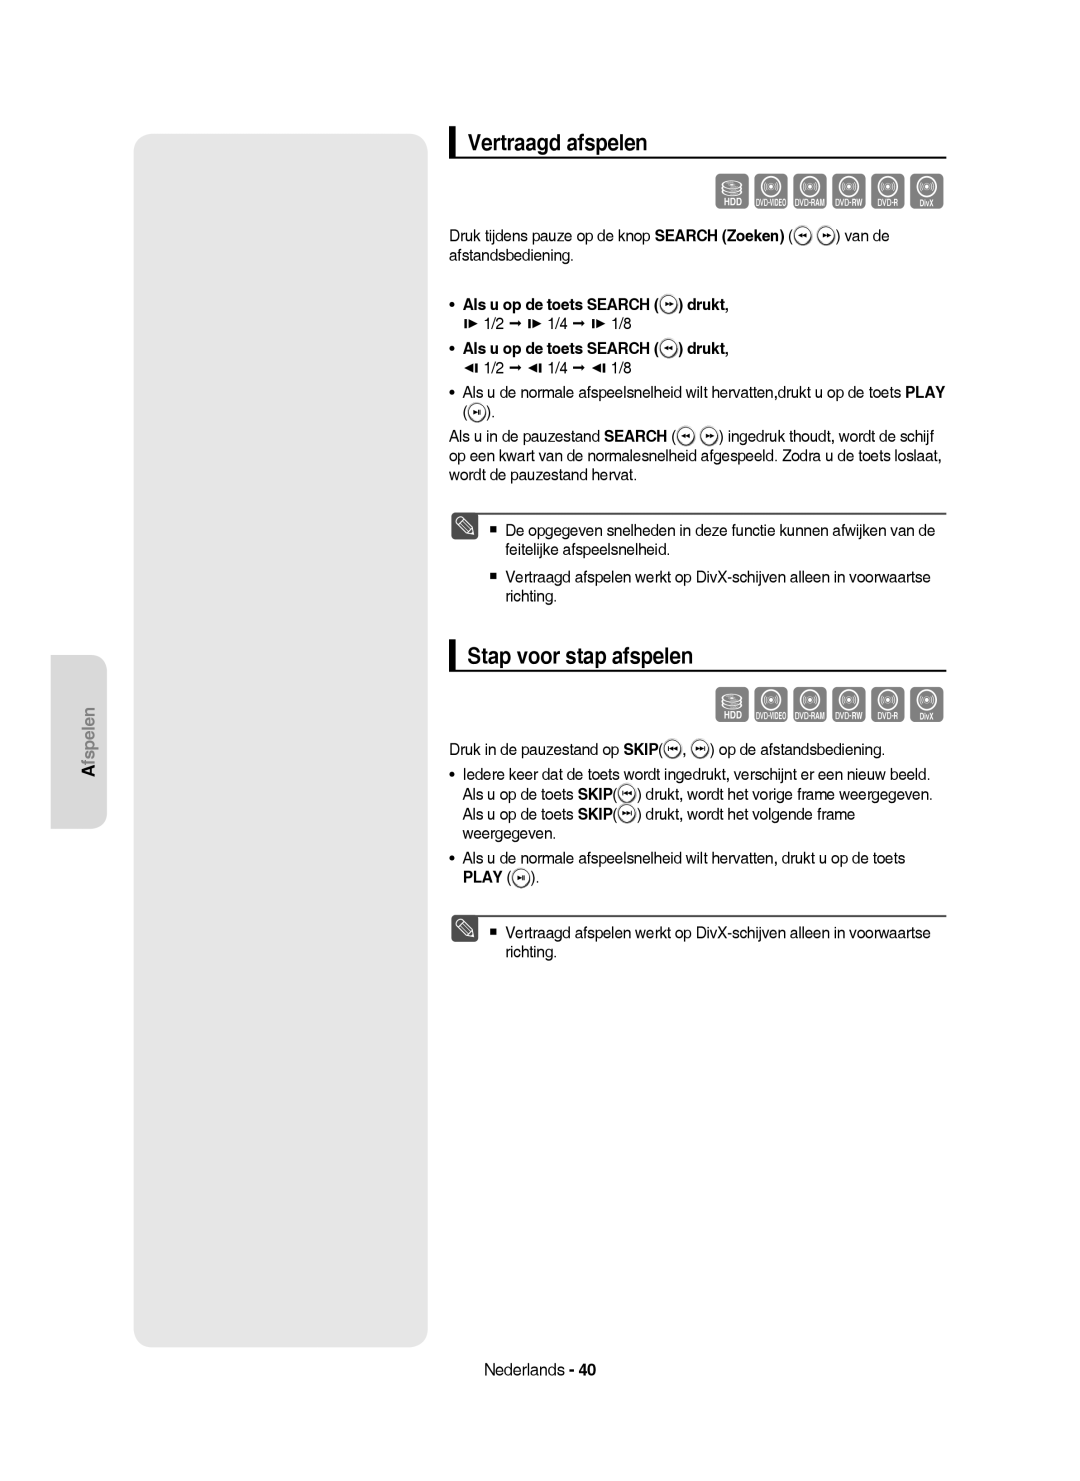 Samsung DVD-HR750/XEG manual Vertraagd afspelen, Stap voor stap afspelen, Als u op de toets Search drukt,  1/2  1/4 1/8 